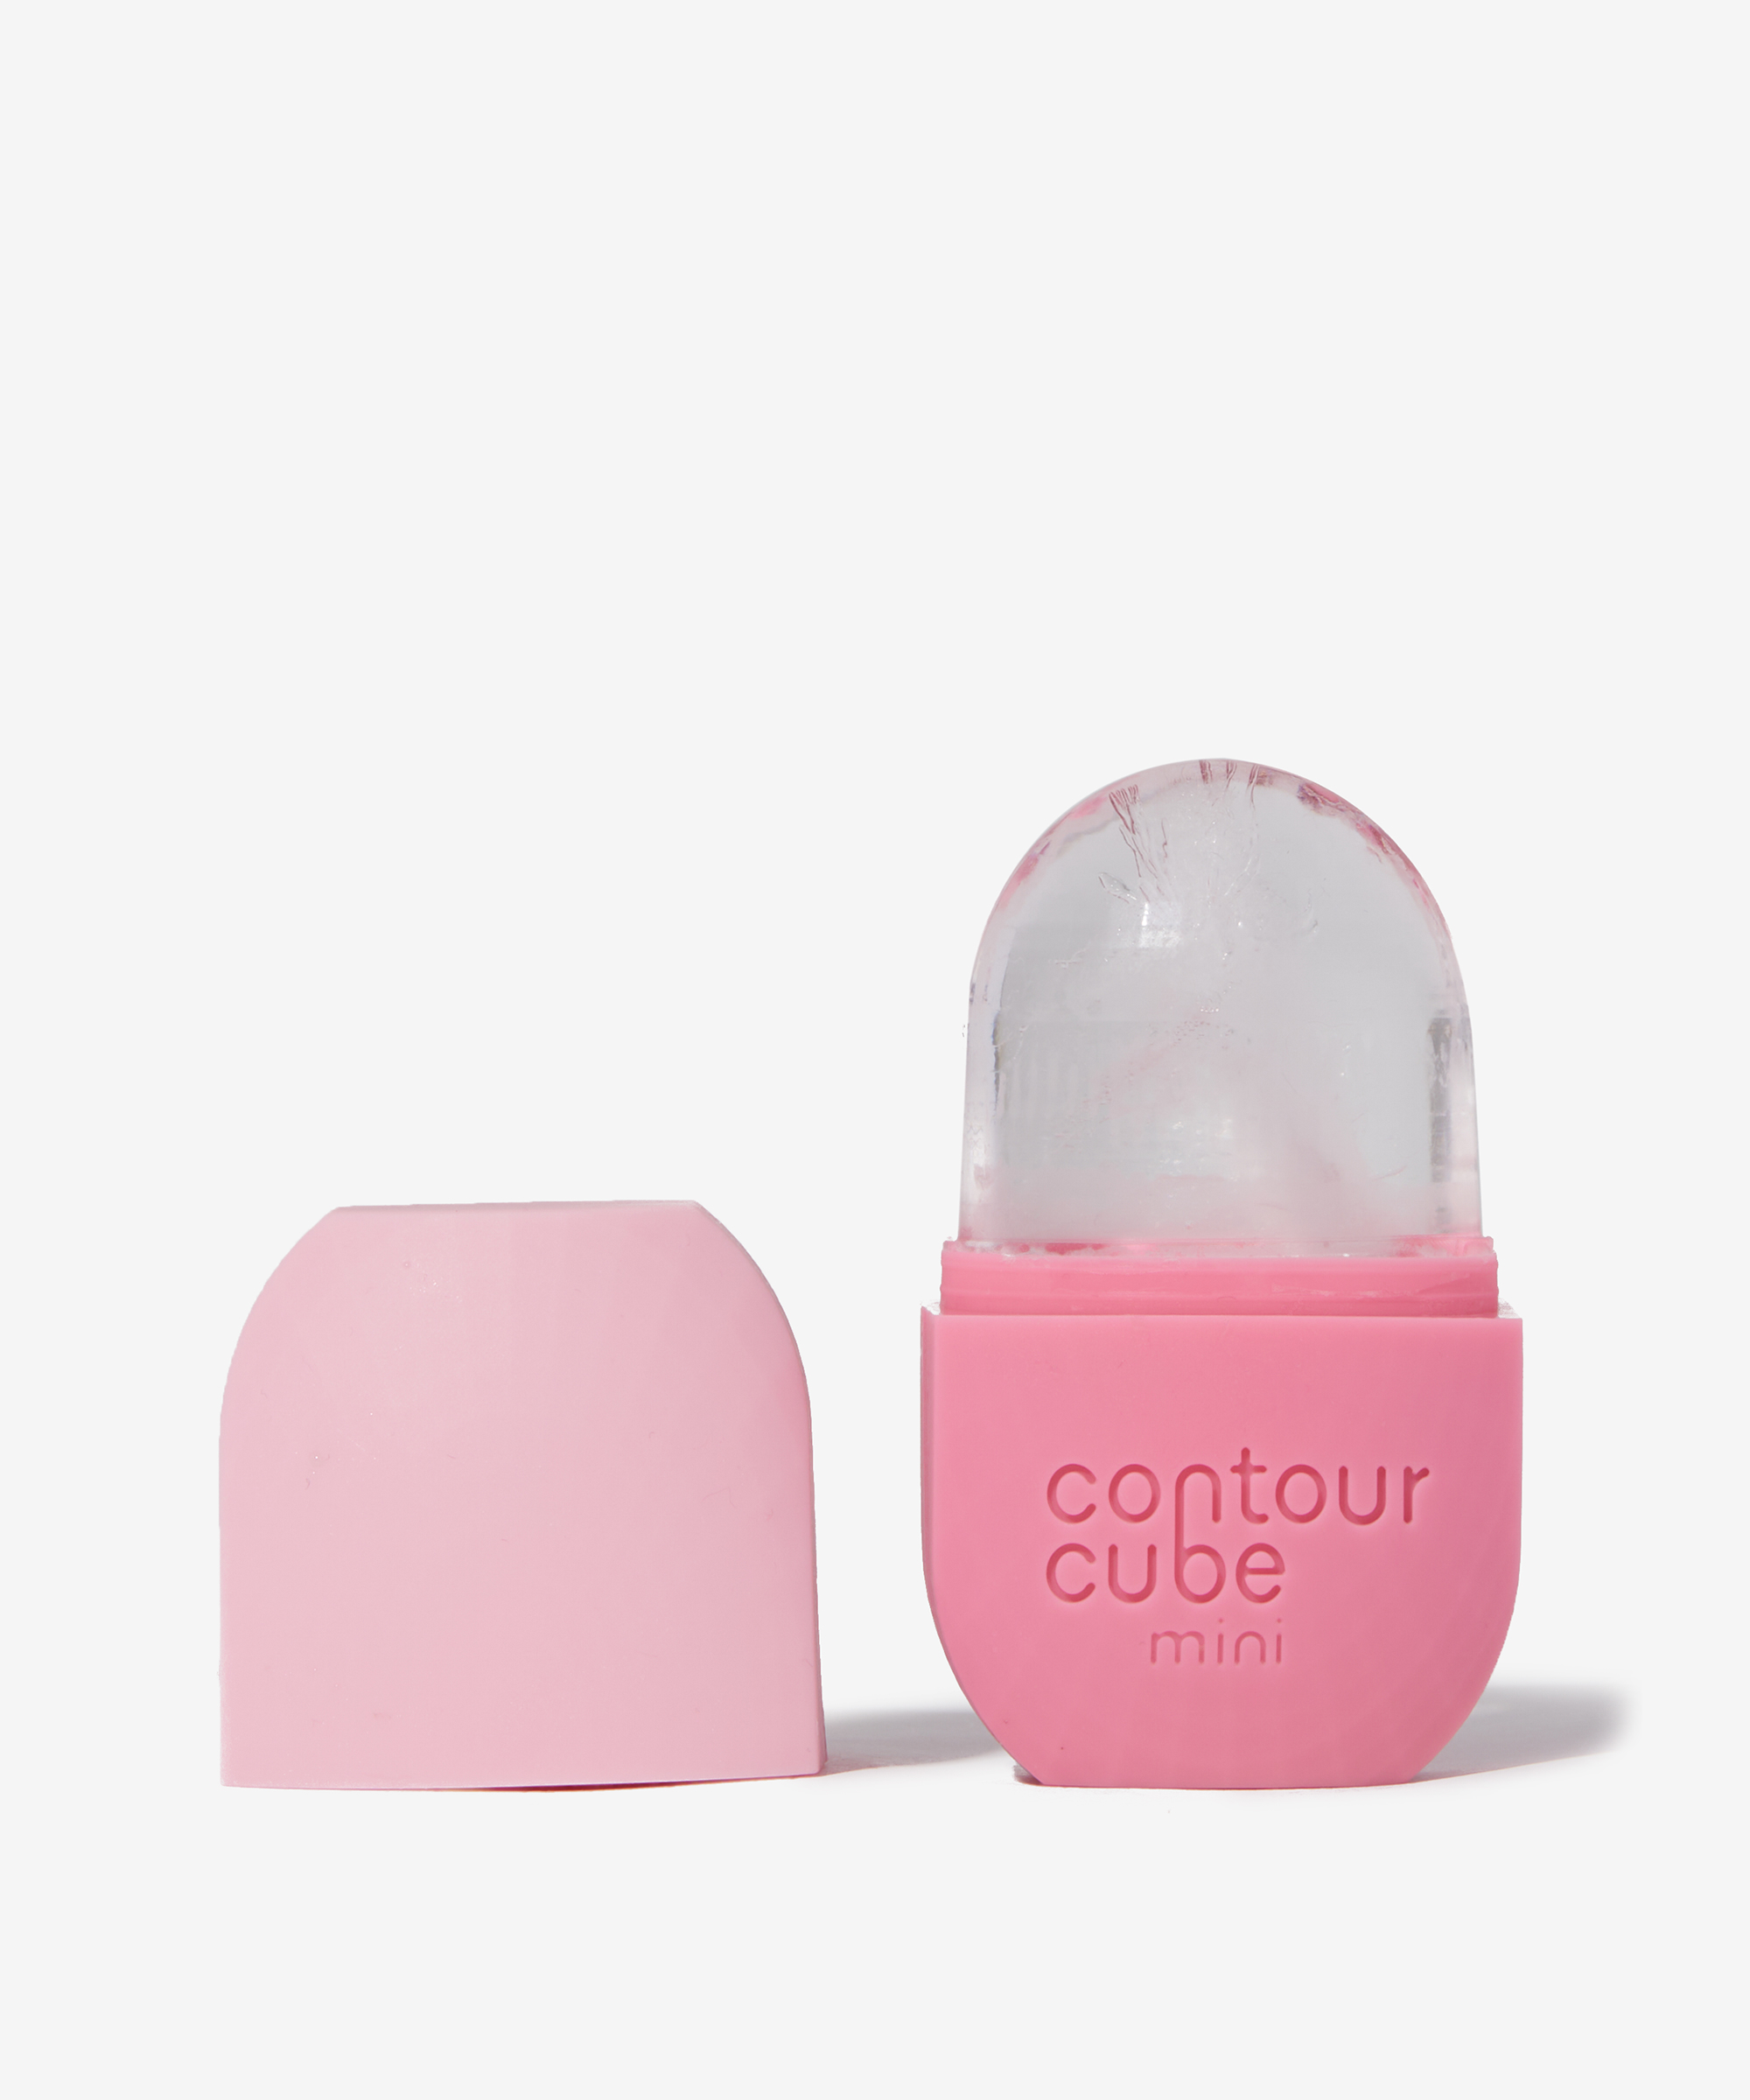 Contour Cube Mini Ice Facial Tool Original Pink